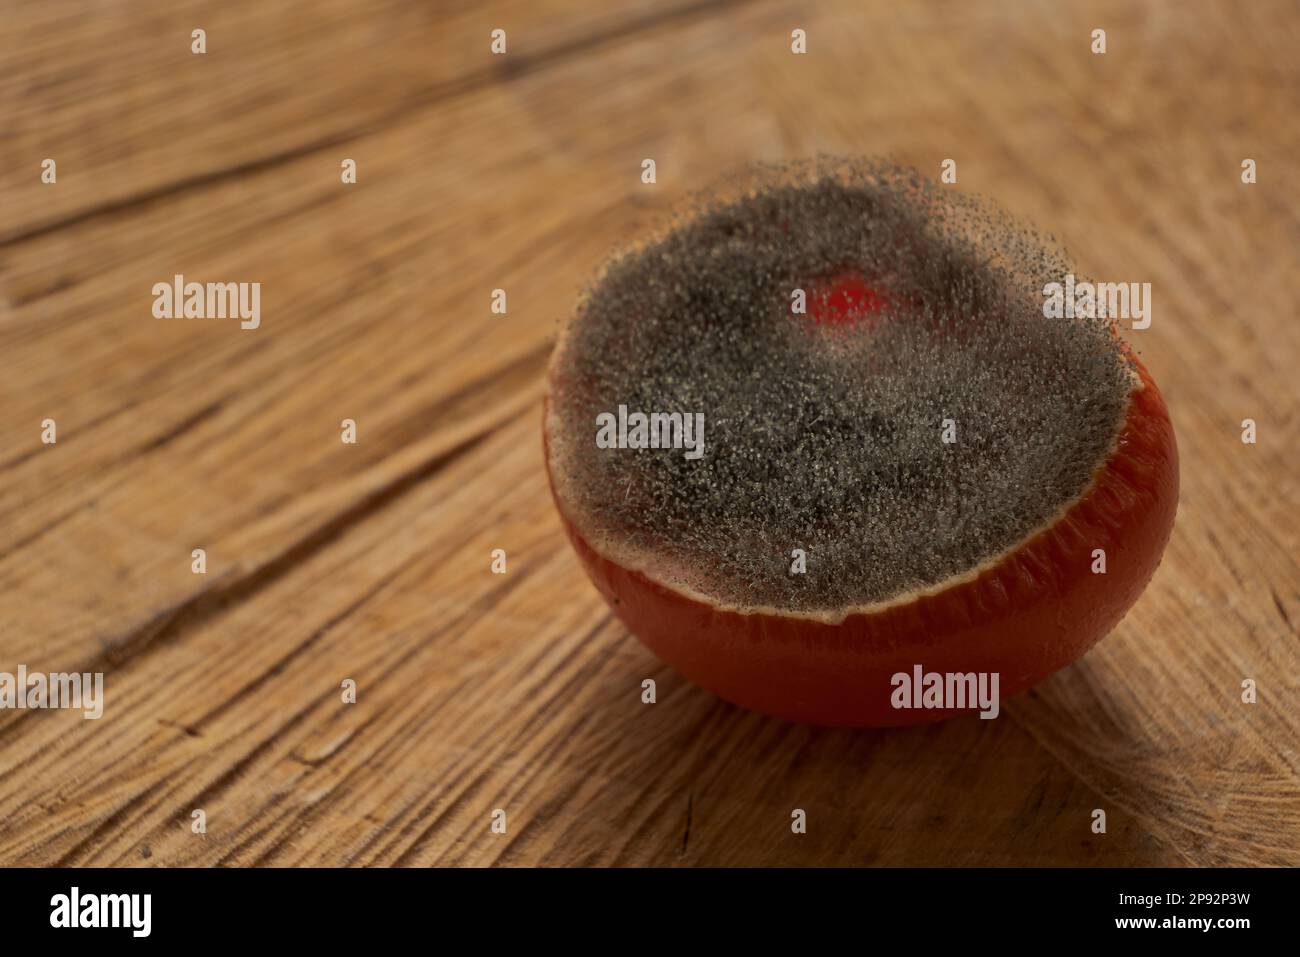 Tagliare il pomodoro rosso infettato da muffa di spore e masse di spore come un esempio di spreco di cibo su un piatto di servizio di legno tagliato Foto Stock